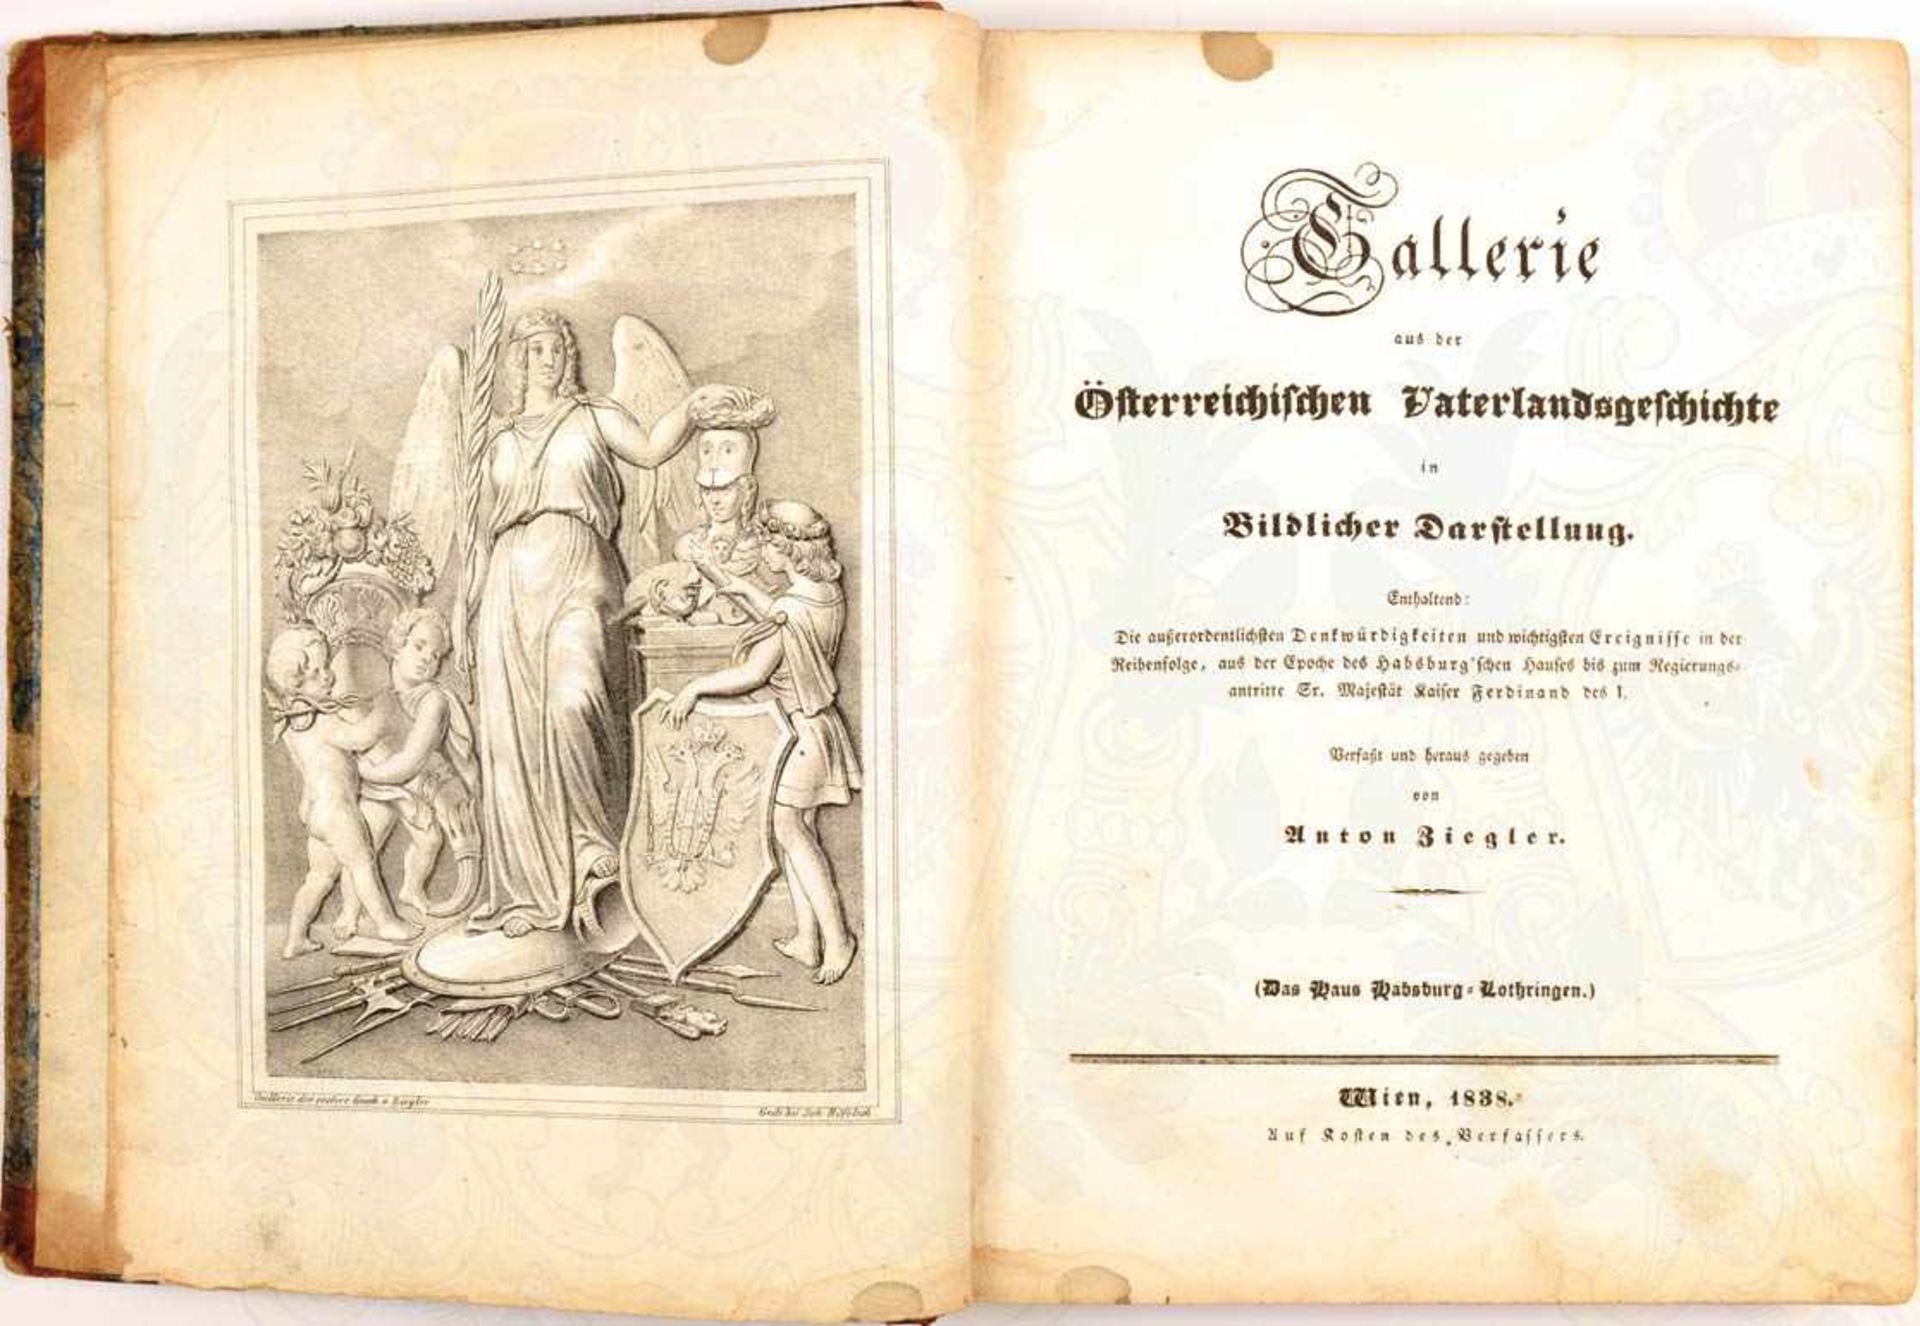 GALLERIE AUS DER ÖSTERREICHISCHEN VATERLANDSGESCHICHTE, „in Bildlicher Darstellung“, Band 3, A.